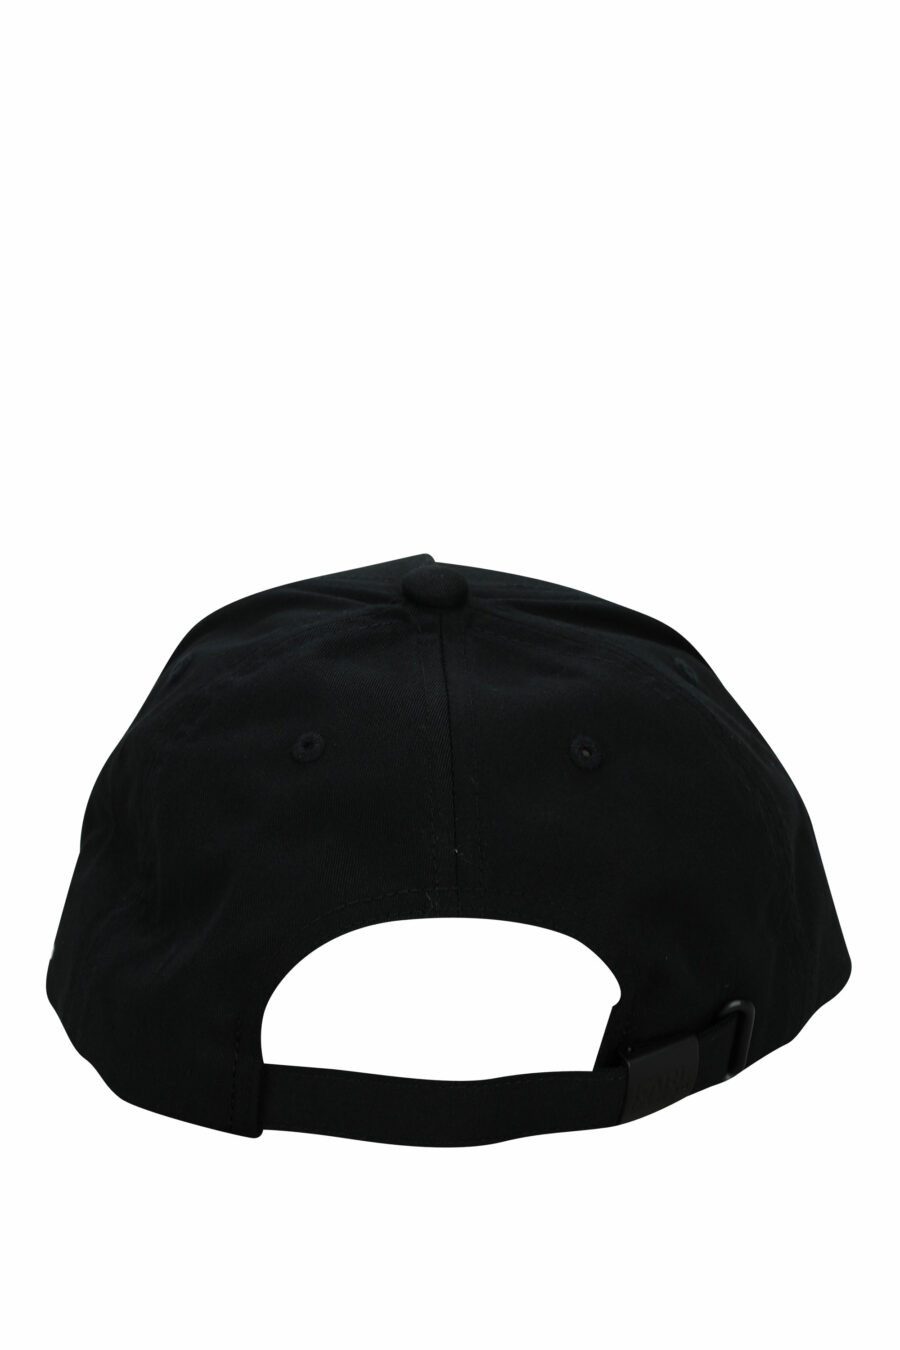 Gorra negra con logo "karl" azul - 4062226701709 1